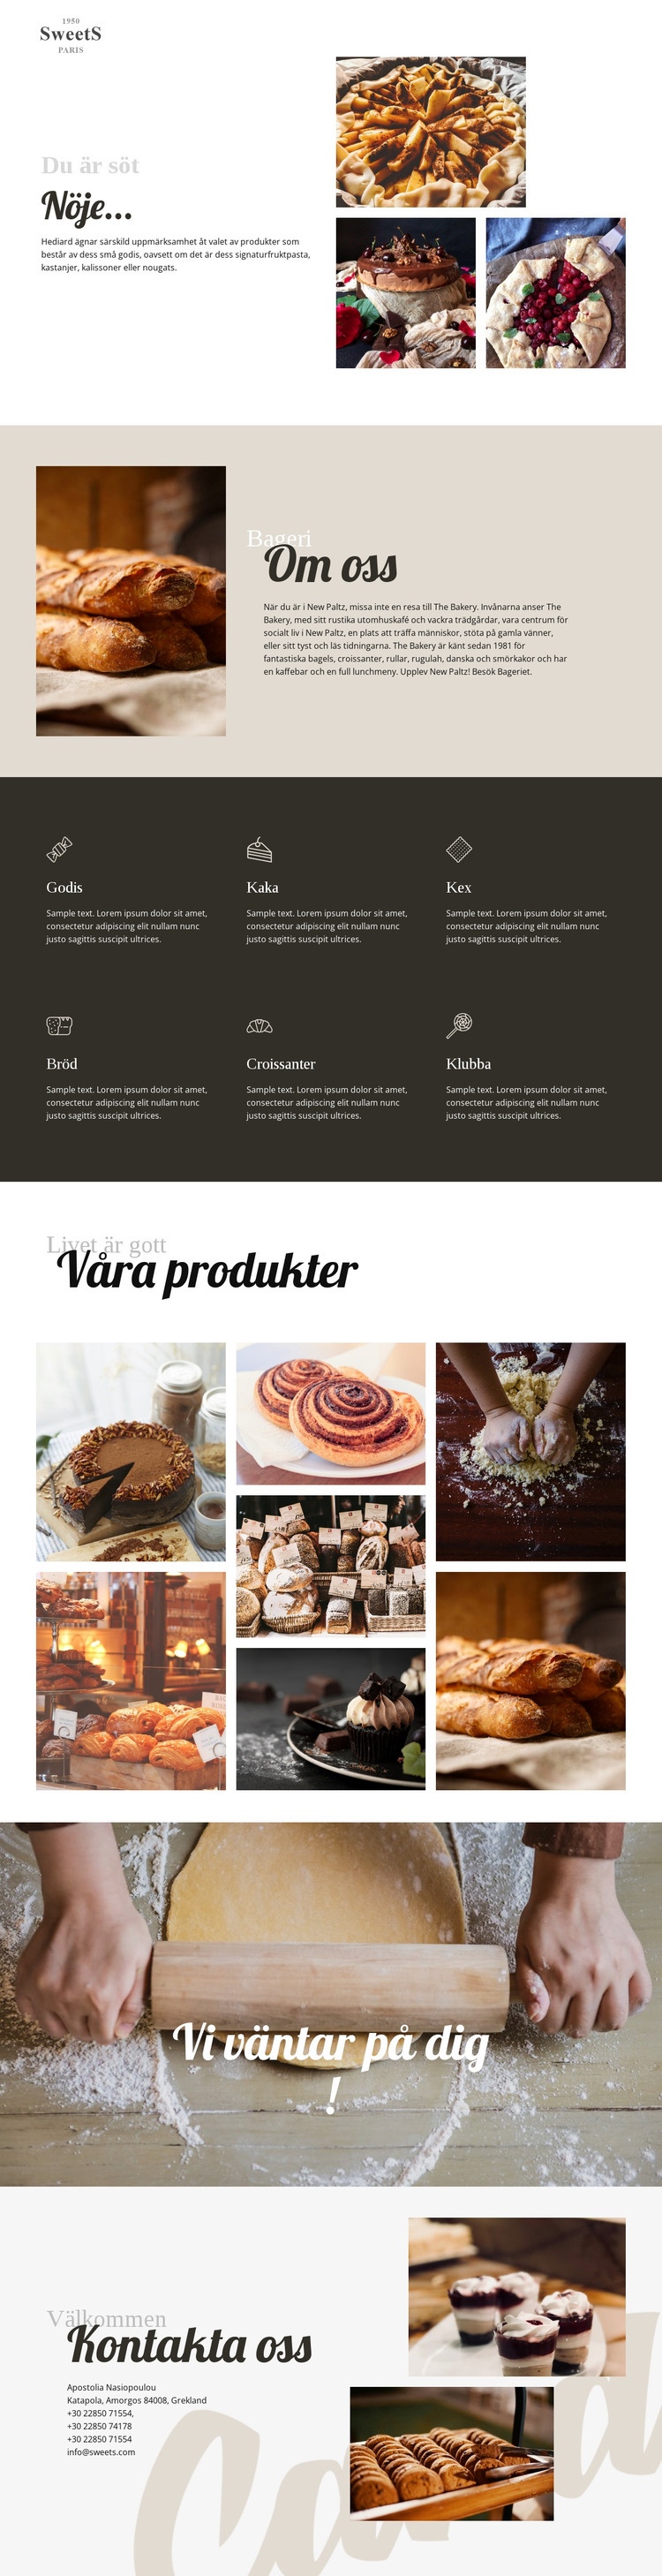 Kakor och bakning av mat CSS -mall